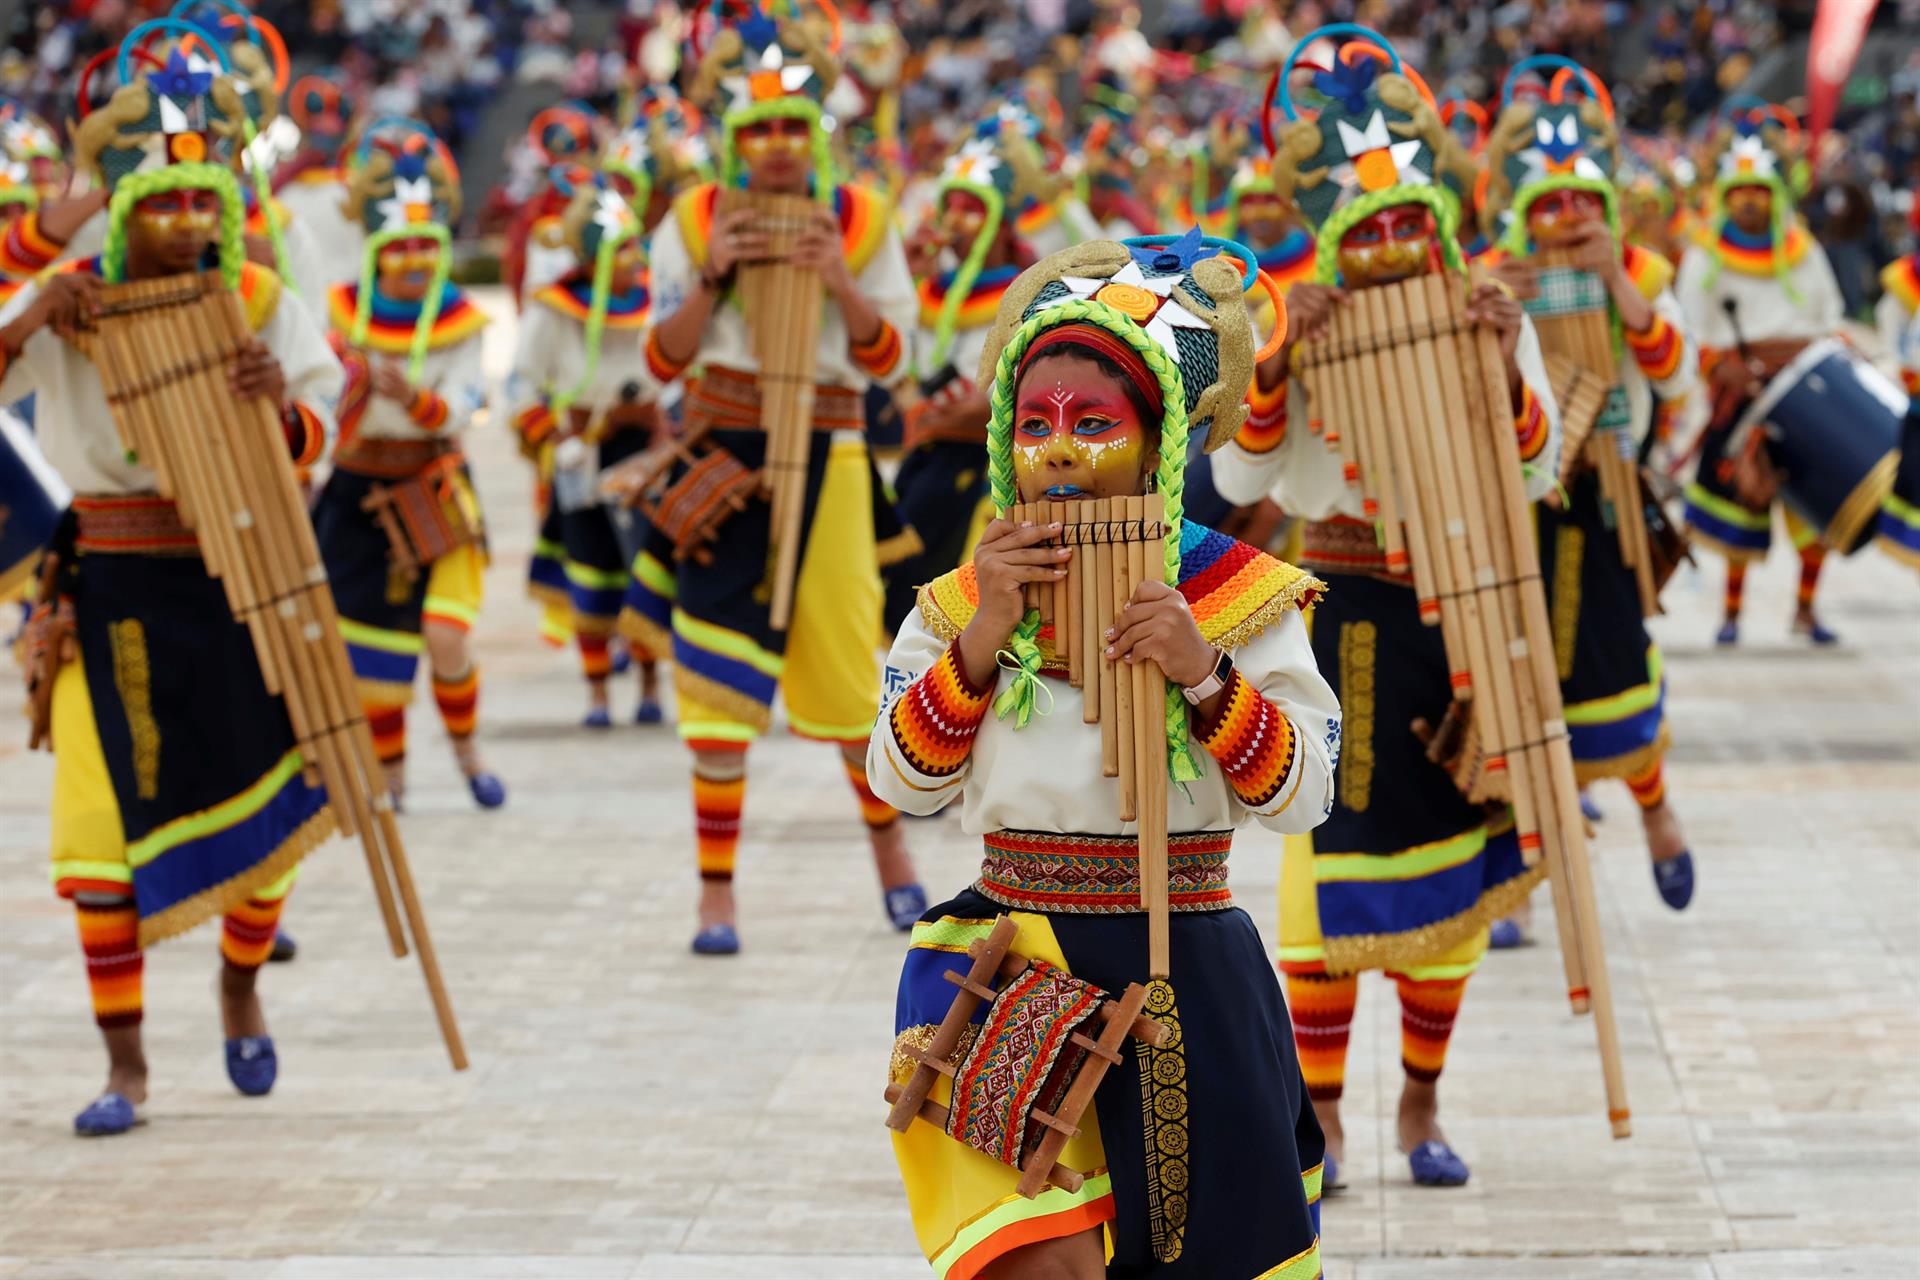 "Canto a la Tierra", the parade of Choreographic Collectives in the "Carnaval de Negros y Blancos" in Colombia